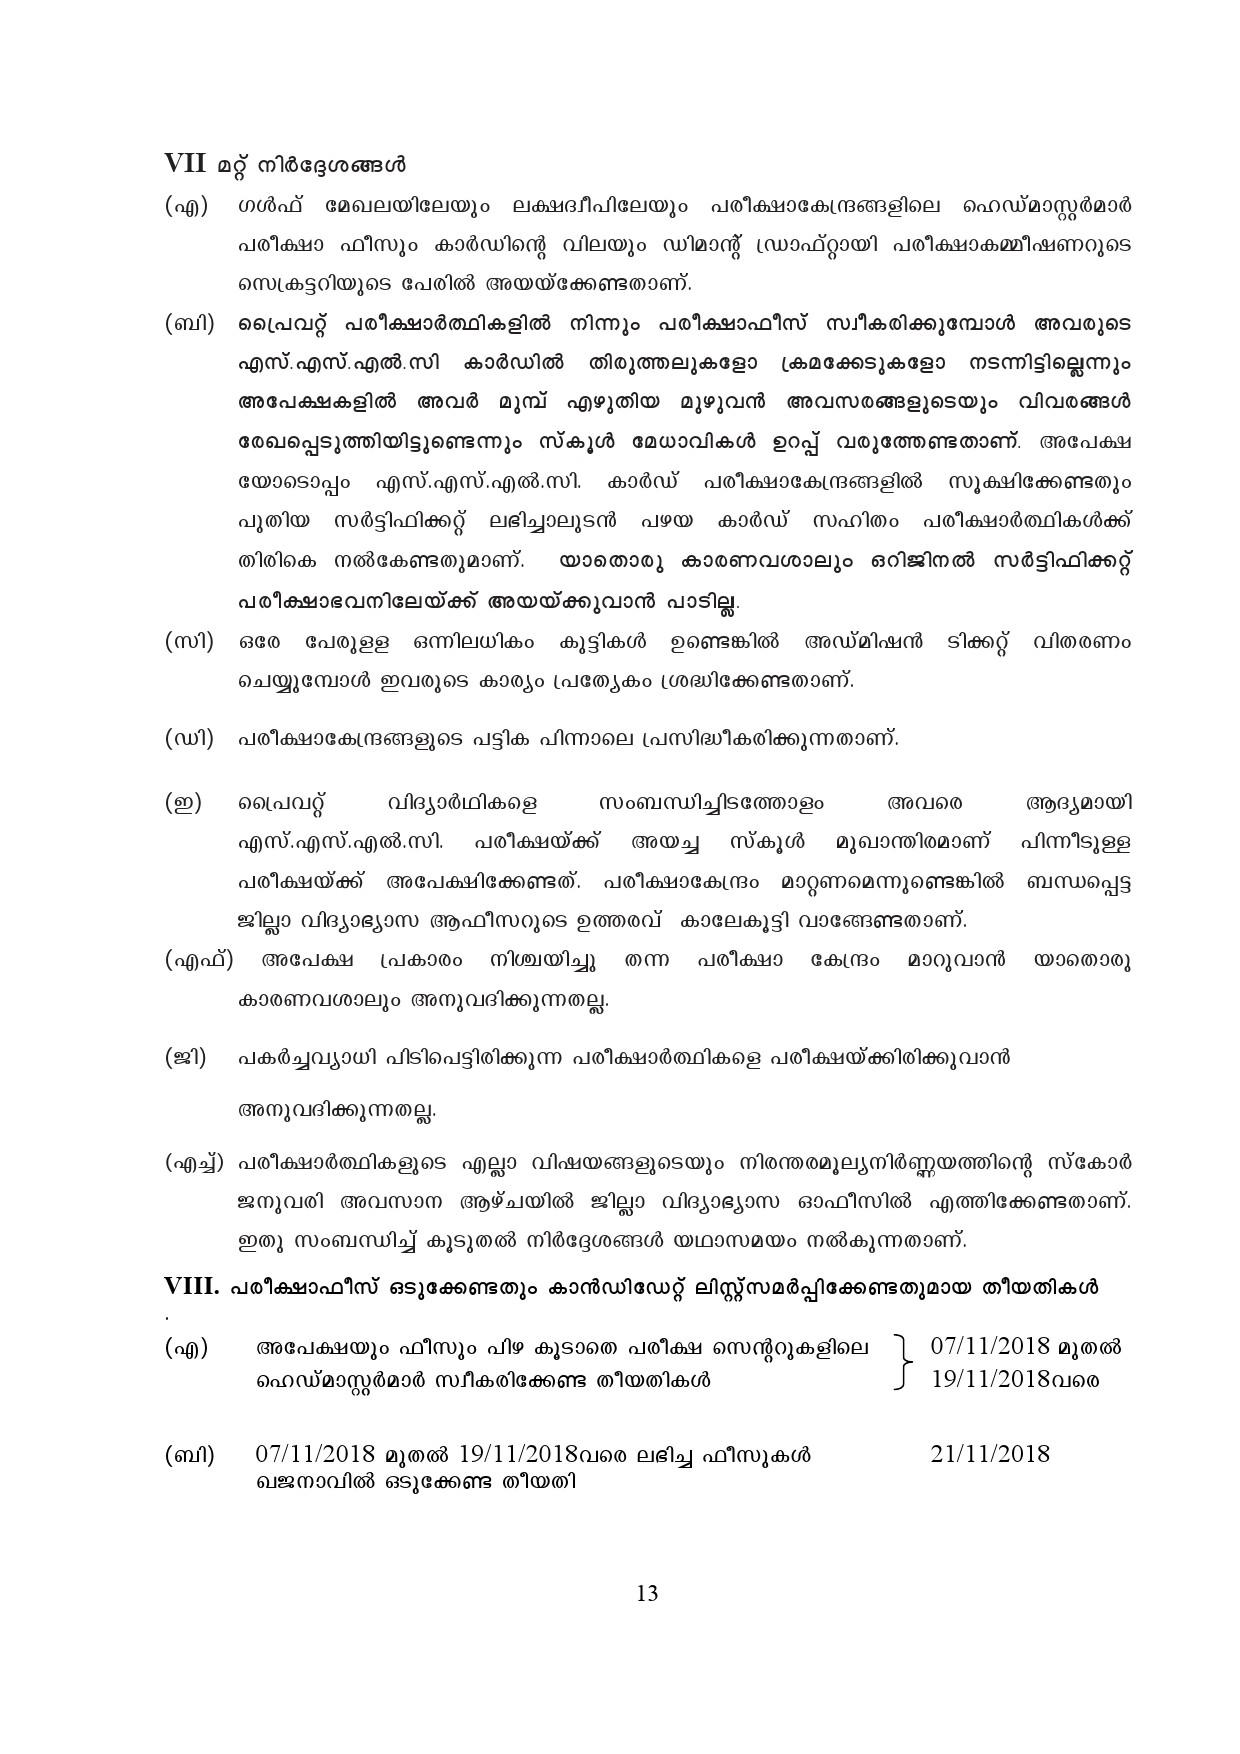 Kerala SSLC Exam Result 2019 - Notification Image 13